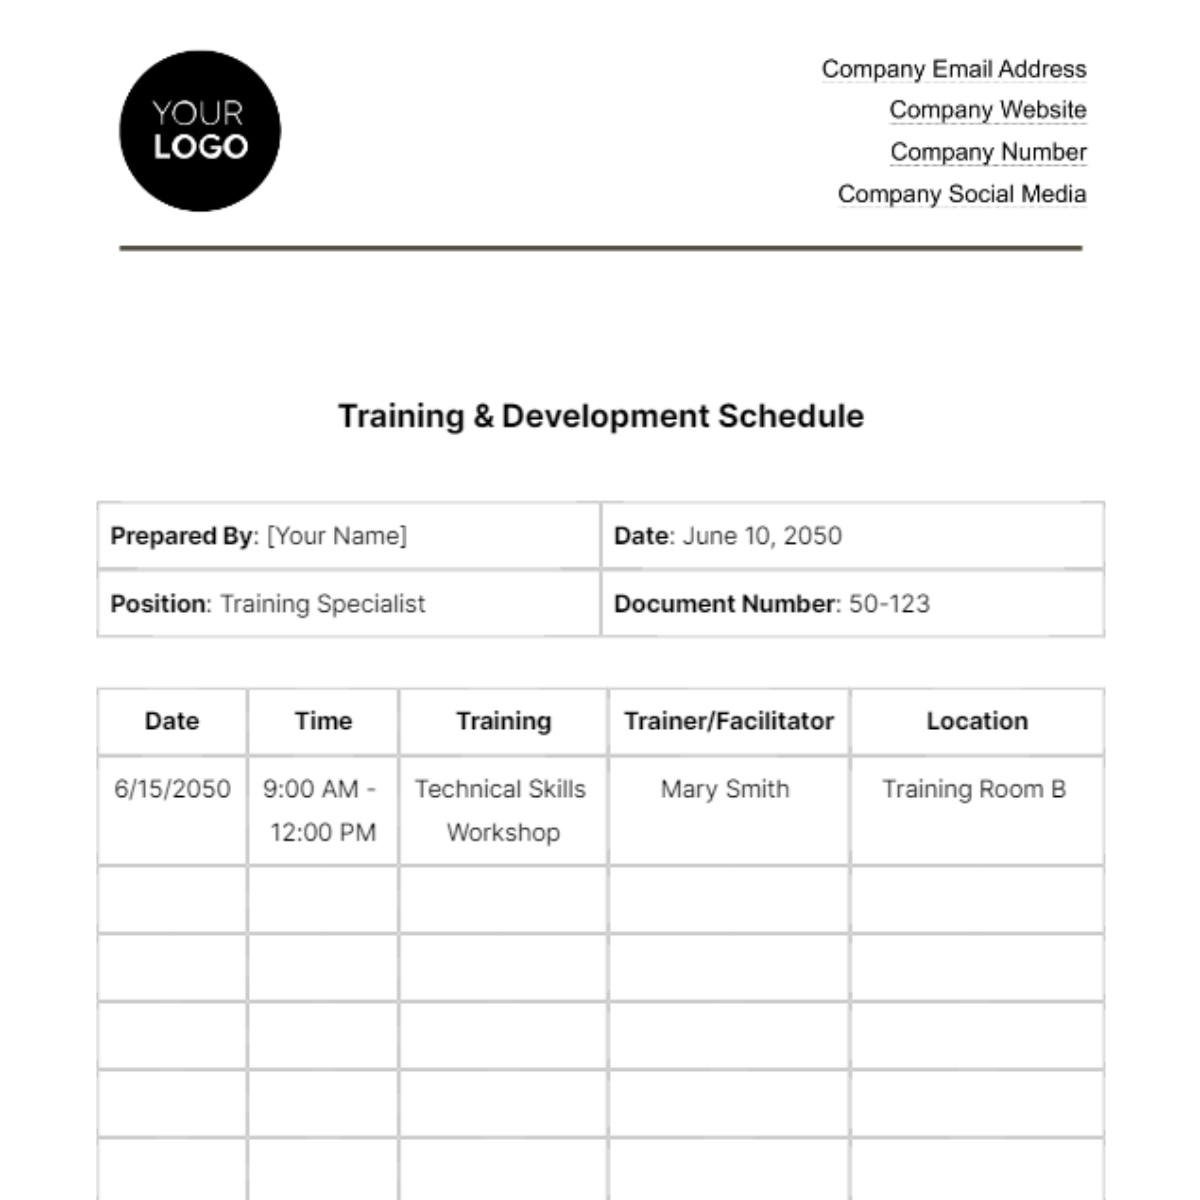 Free Training & Development Schedule HR Template